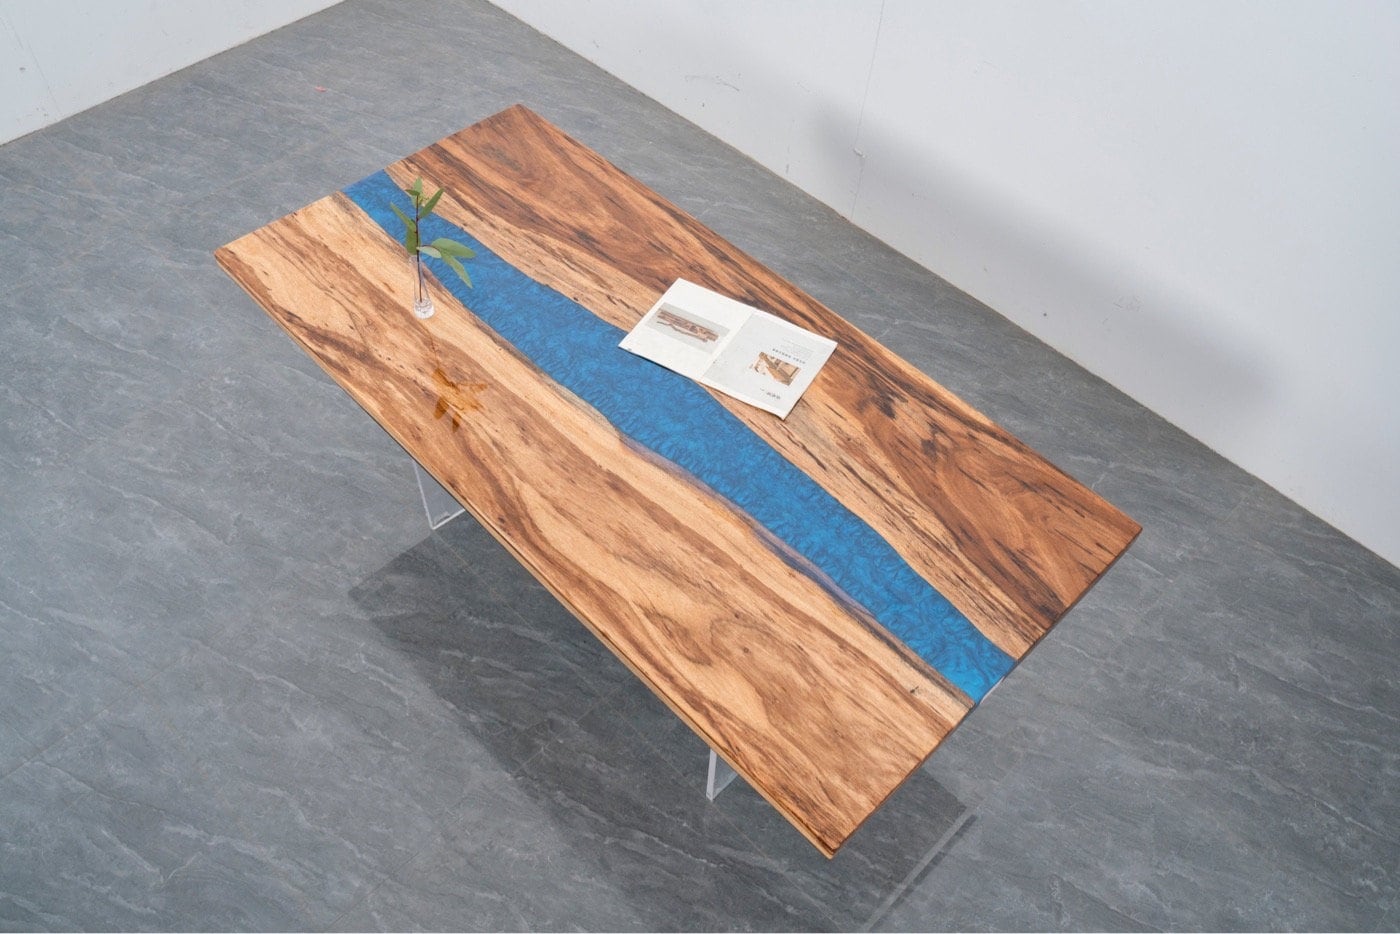 einzigartiger Epoxid-Esstisch, Epoxid-Küchen-Esstisch, Fluss <tc>Beli noir wood</tc> Epoxid-Tisch, Naturholz-Epoxid-Tisch